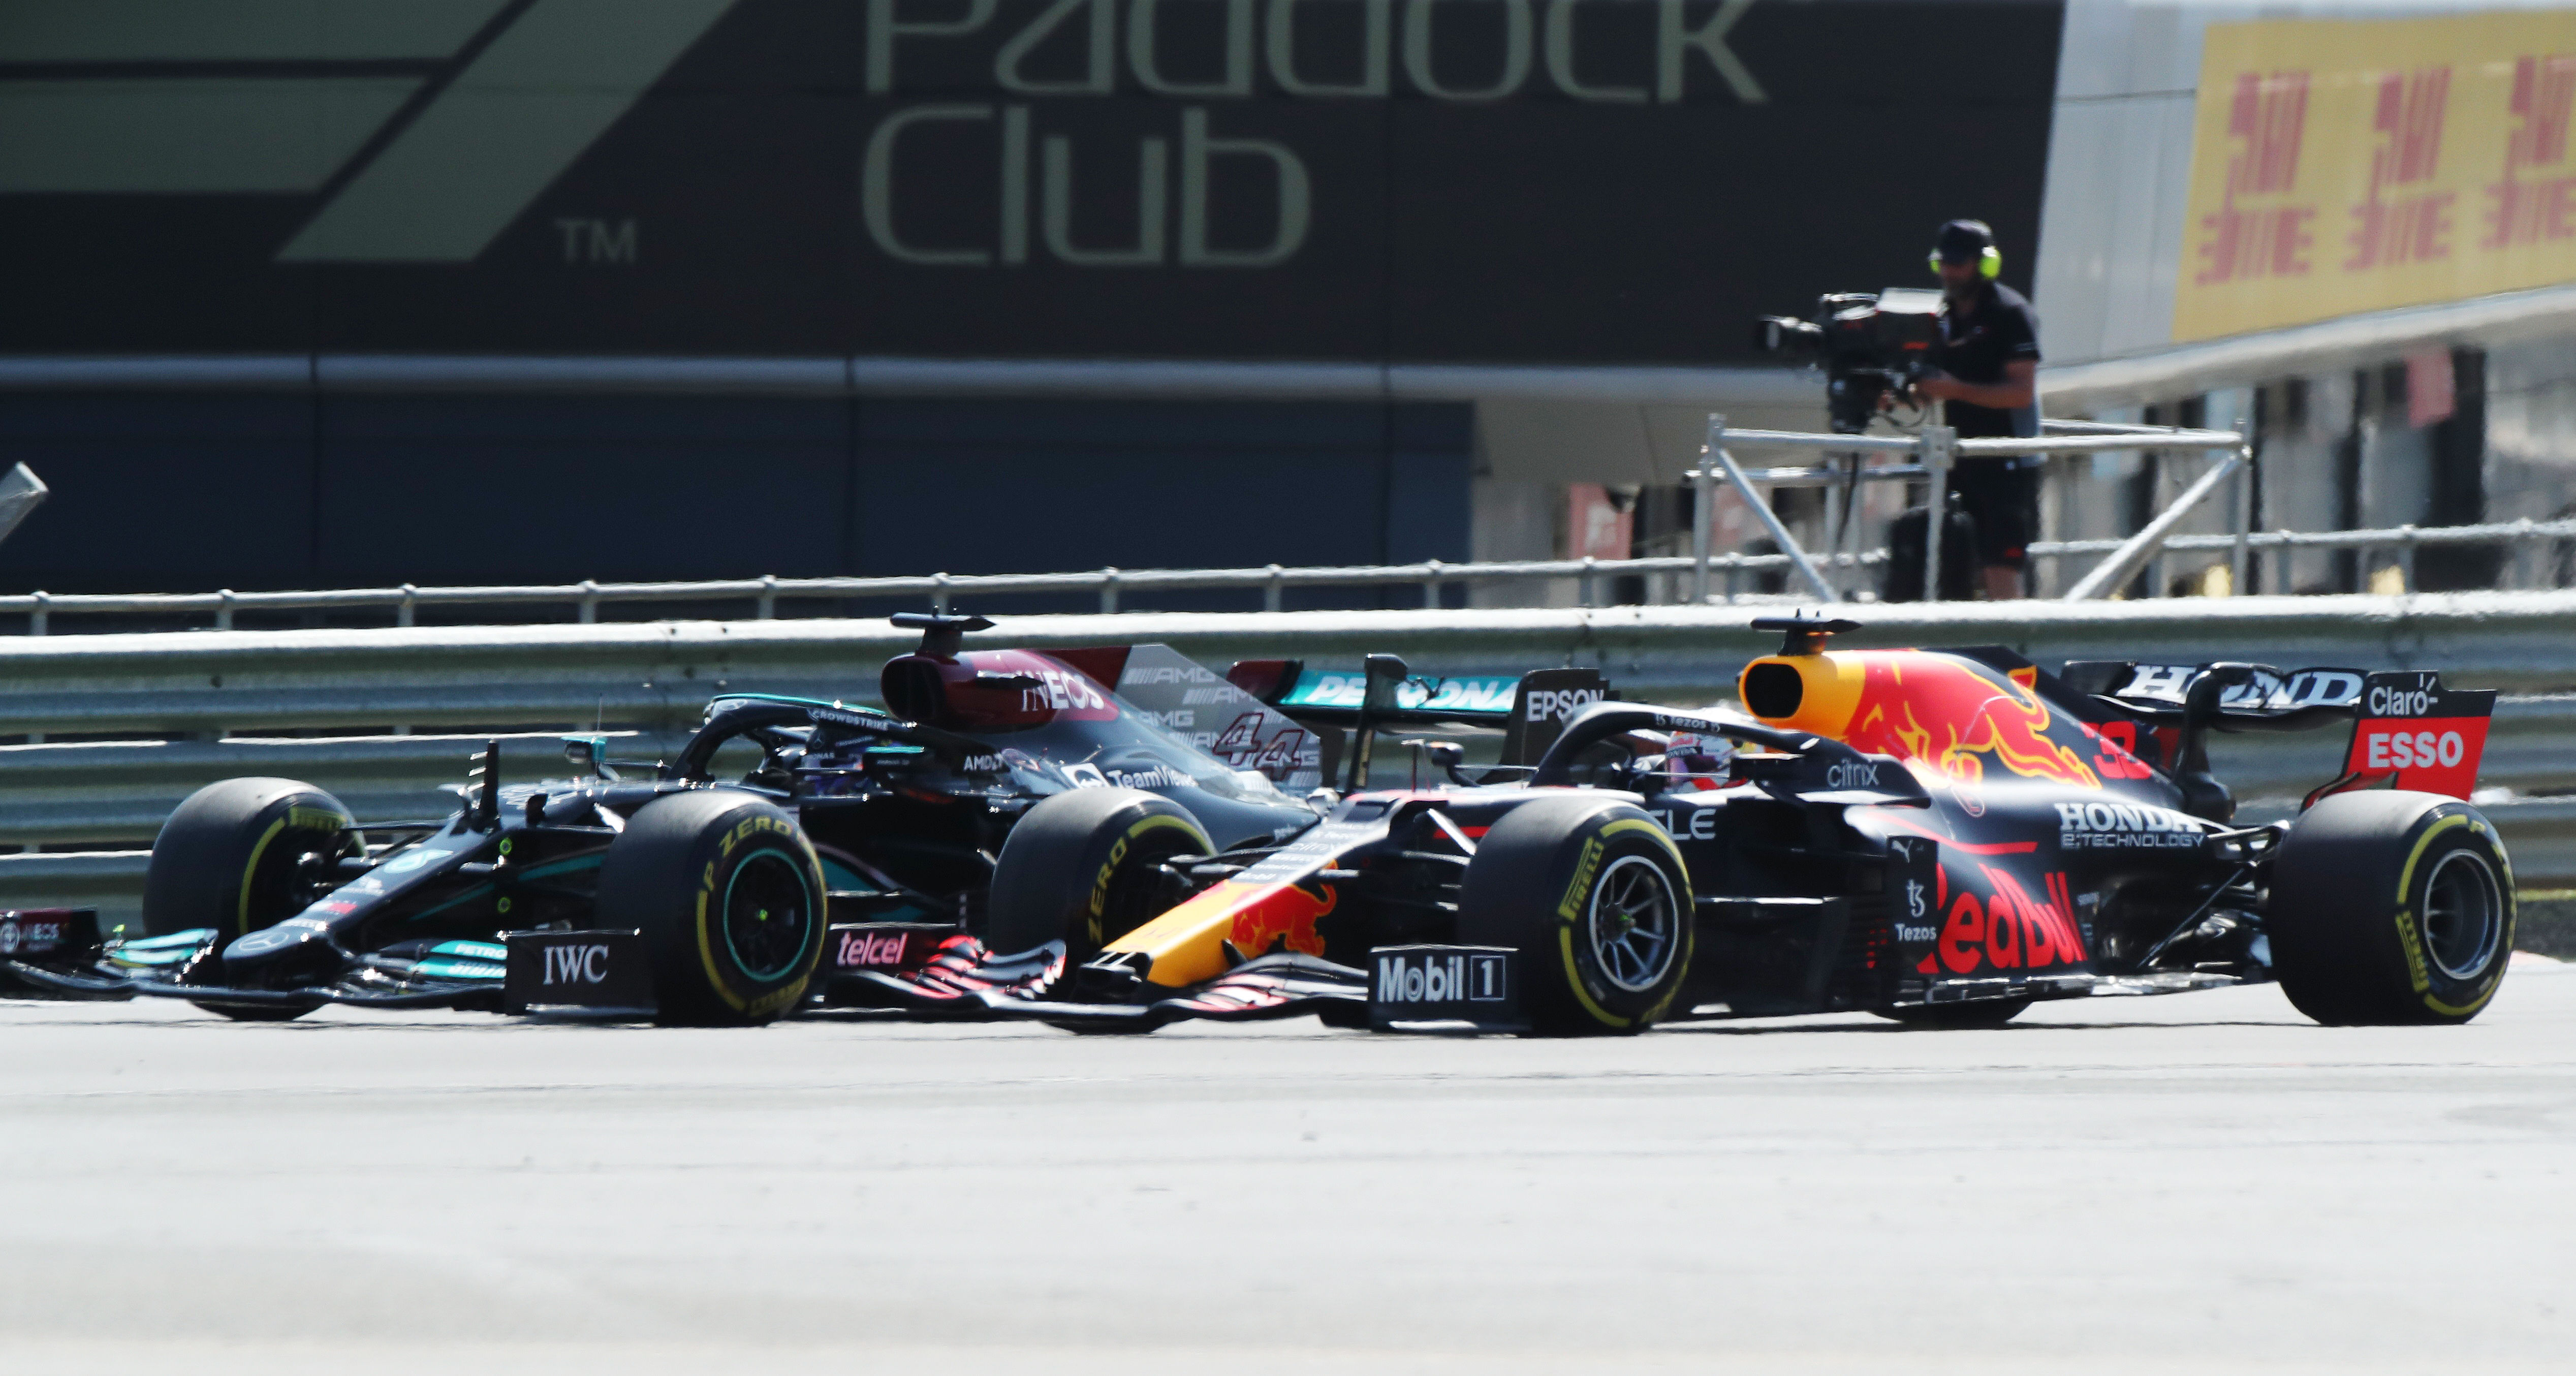 Verstappen crash cost Red Bull $1.8 million, says Horner